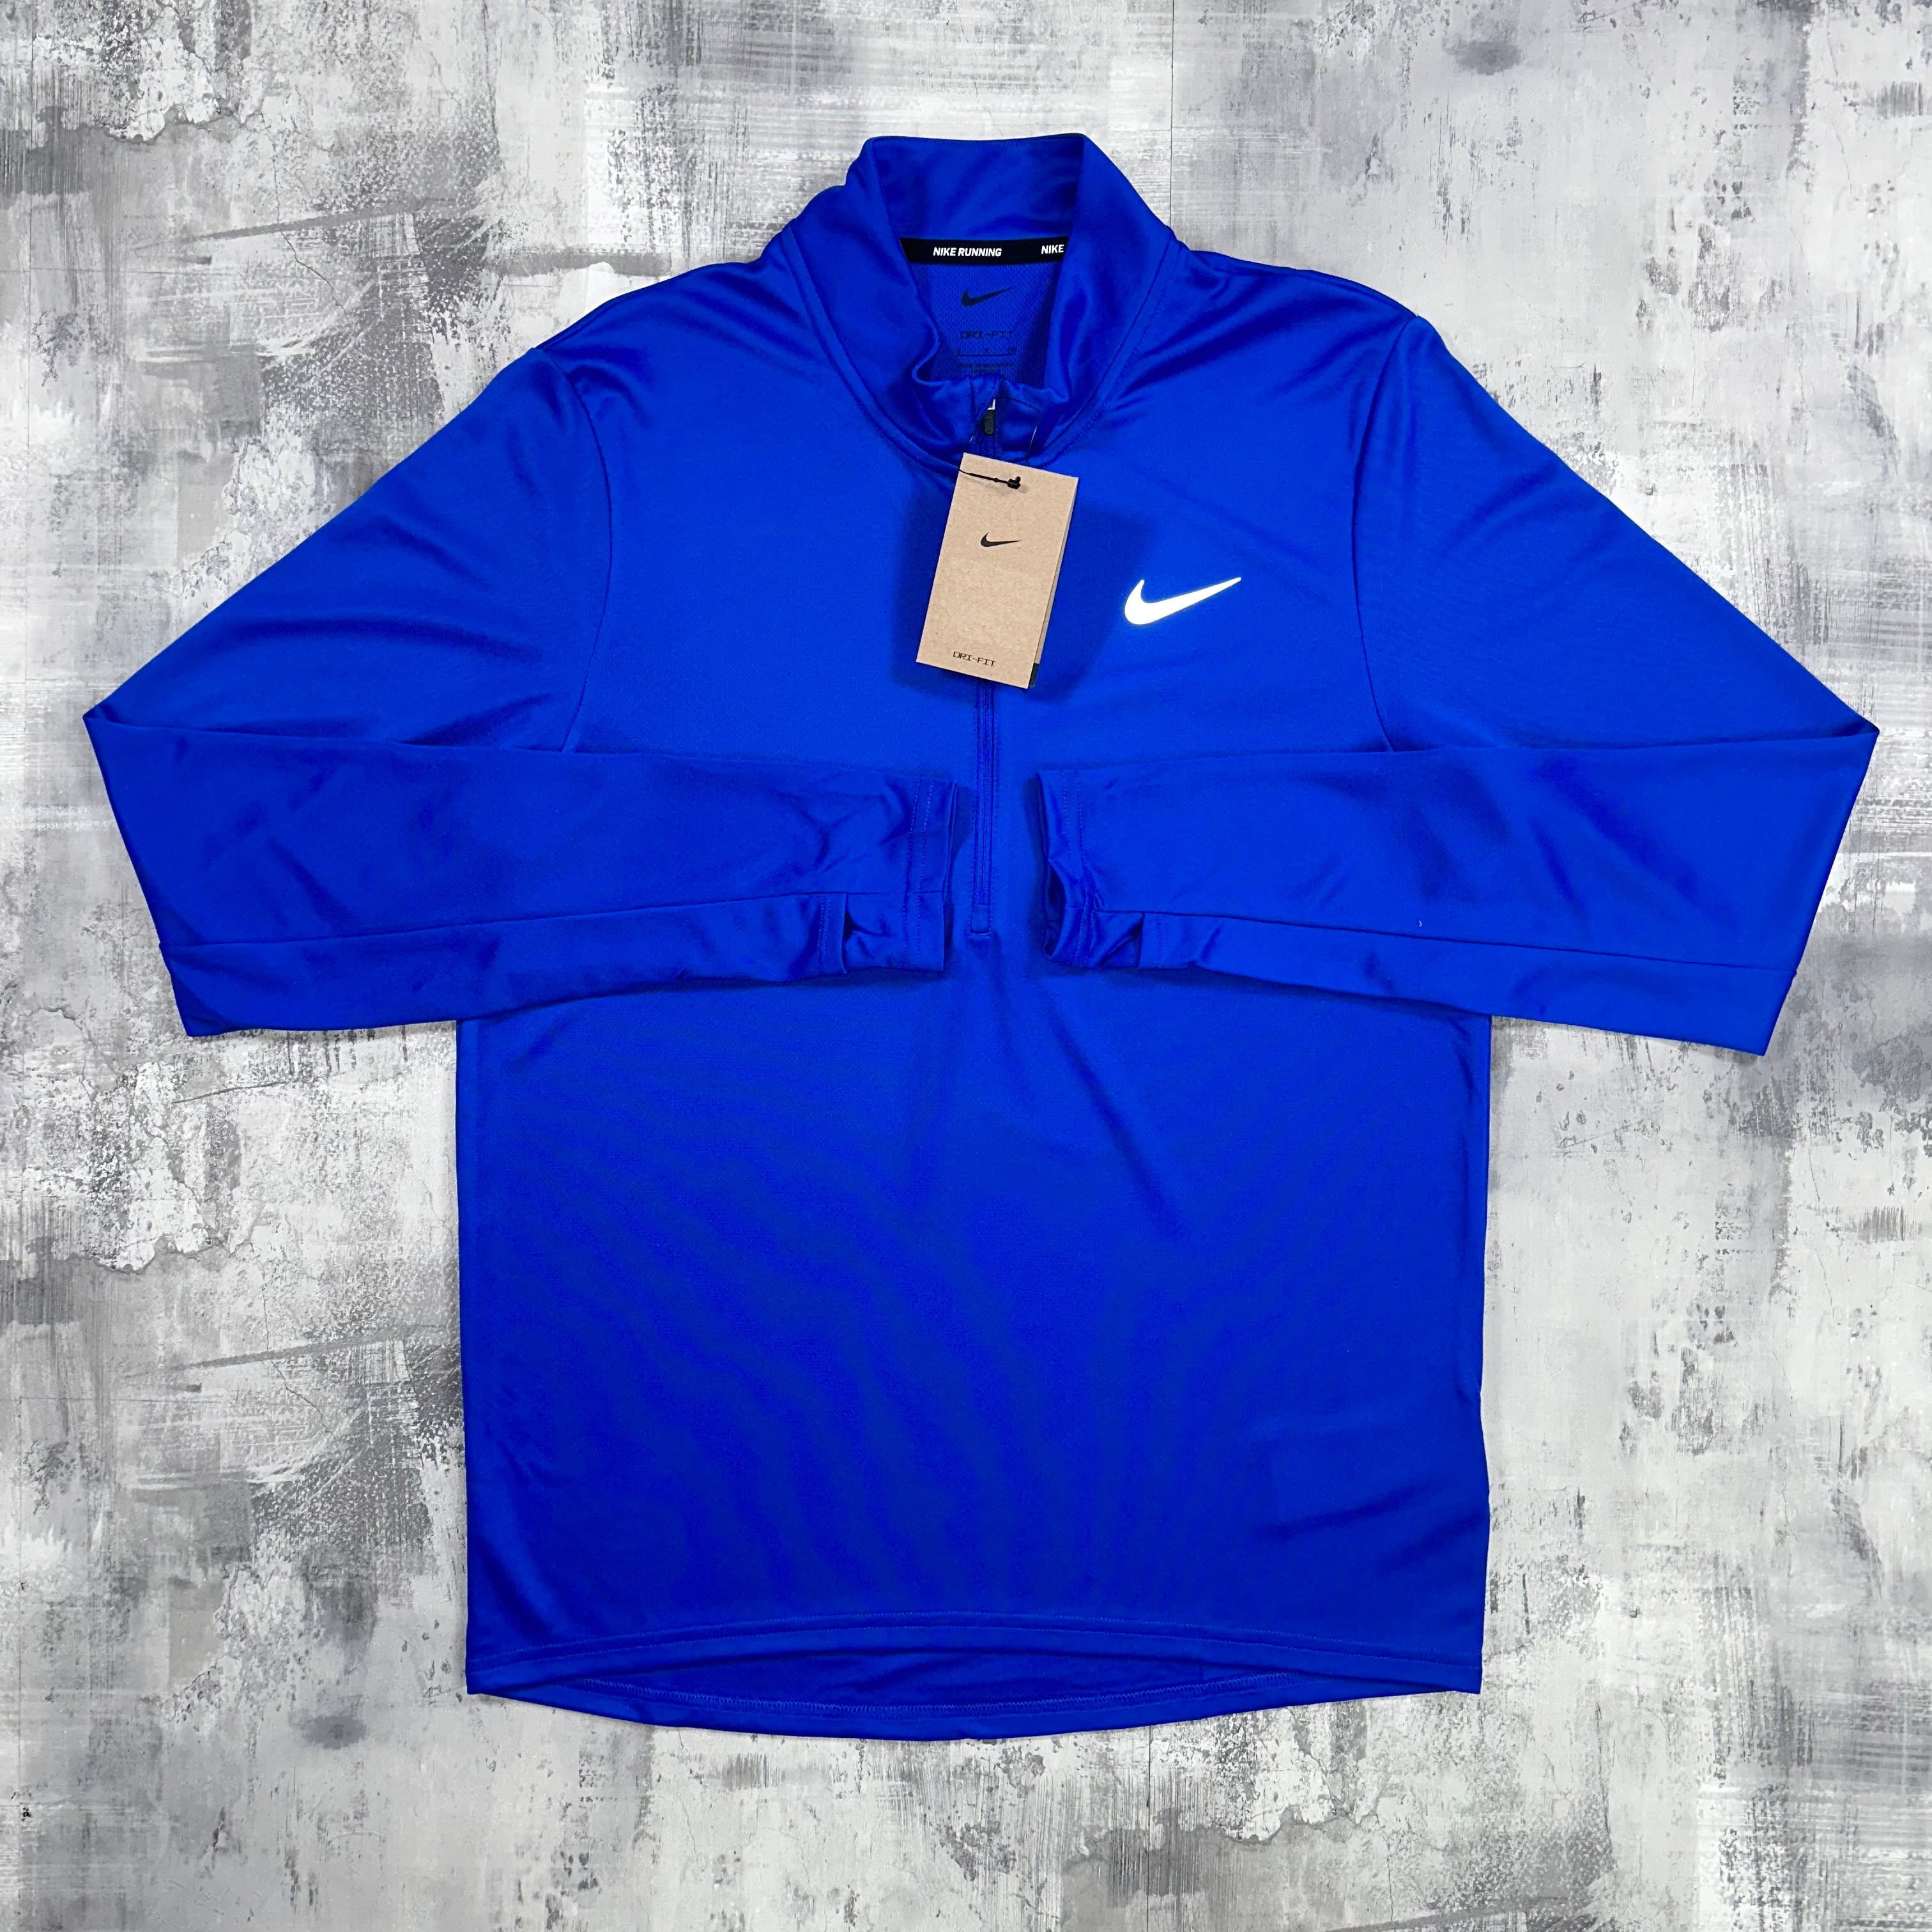 Nike pacer 1/2 zip Royal Blue